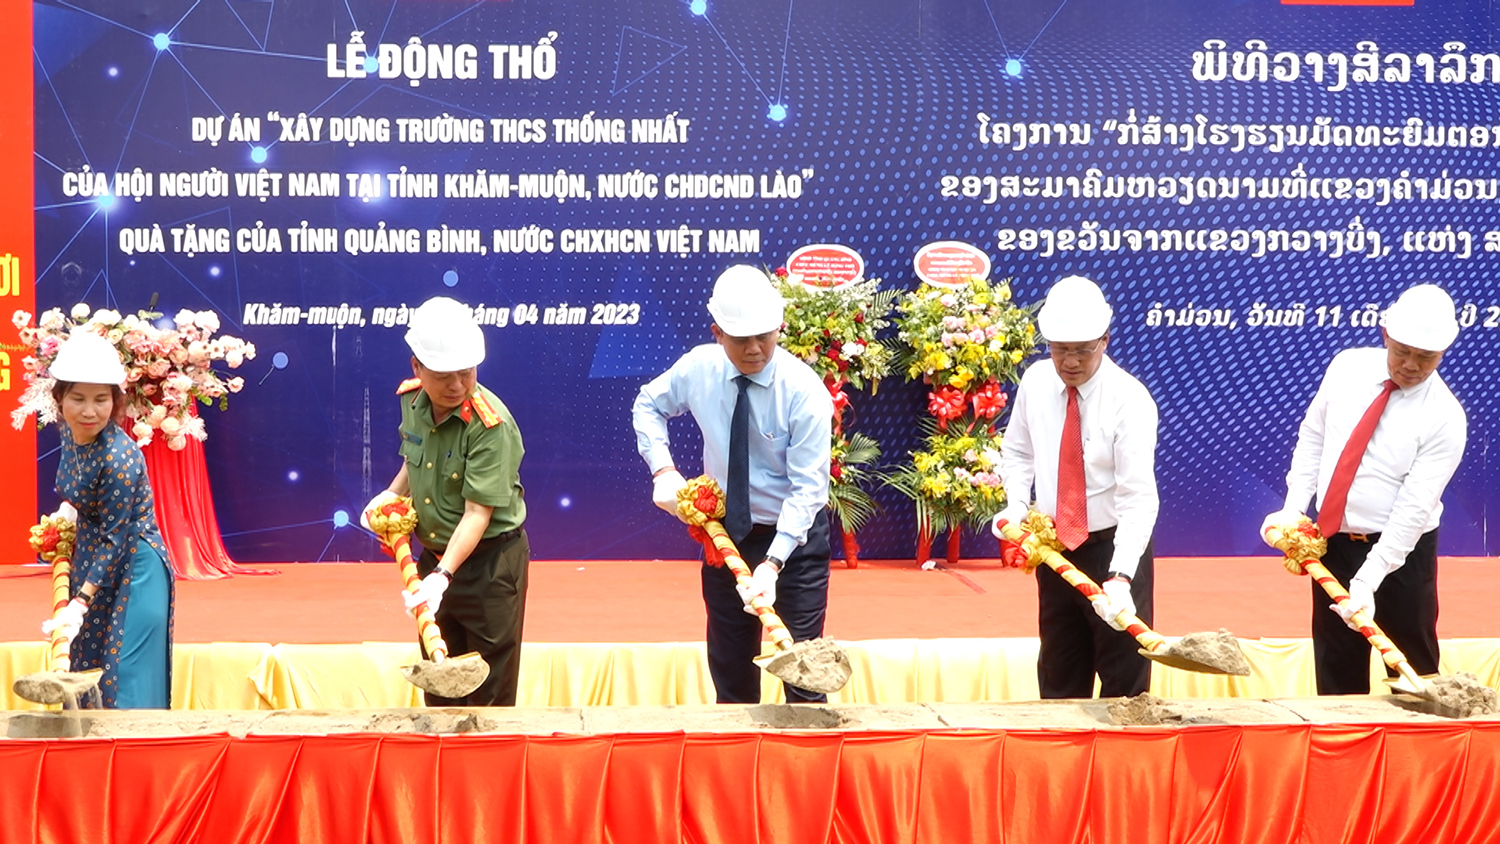 Lễ động thổ xây dựng Trường THCS Thống Nhất tại tỉnh Khăm Muồn